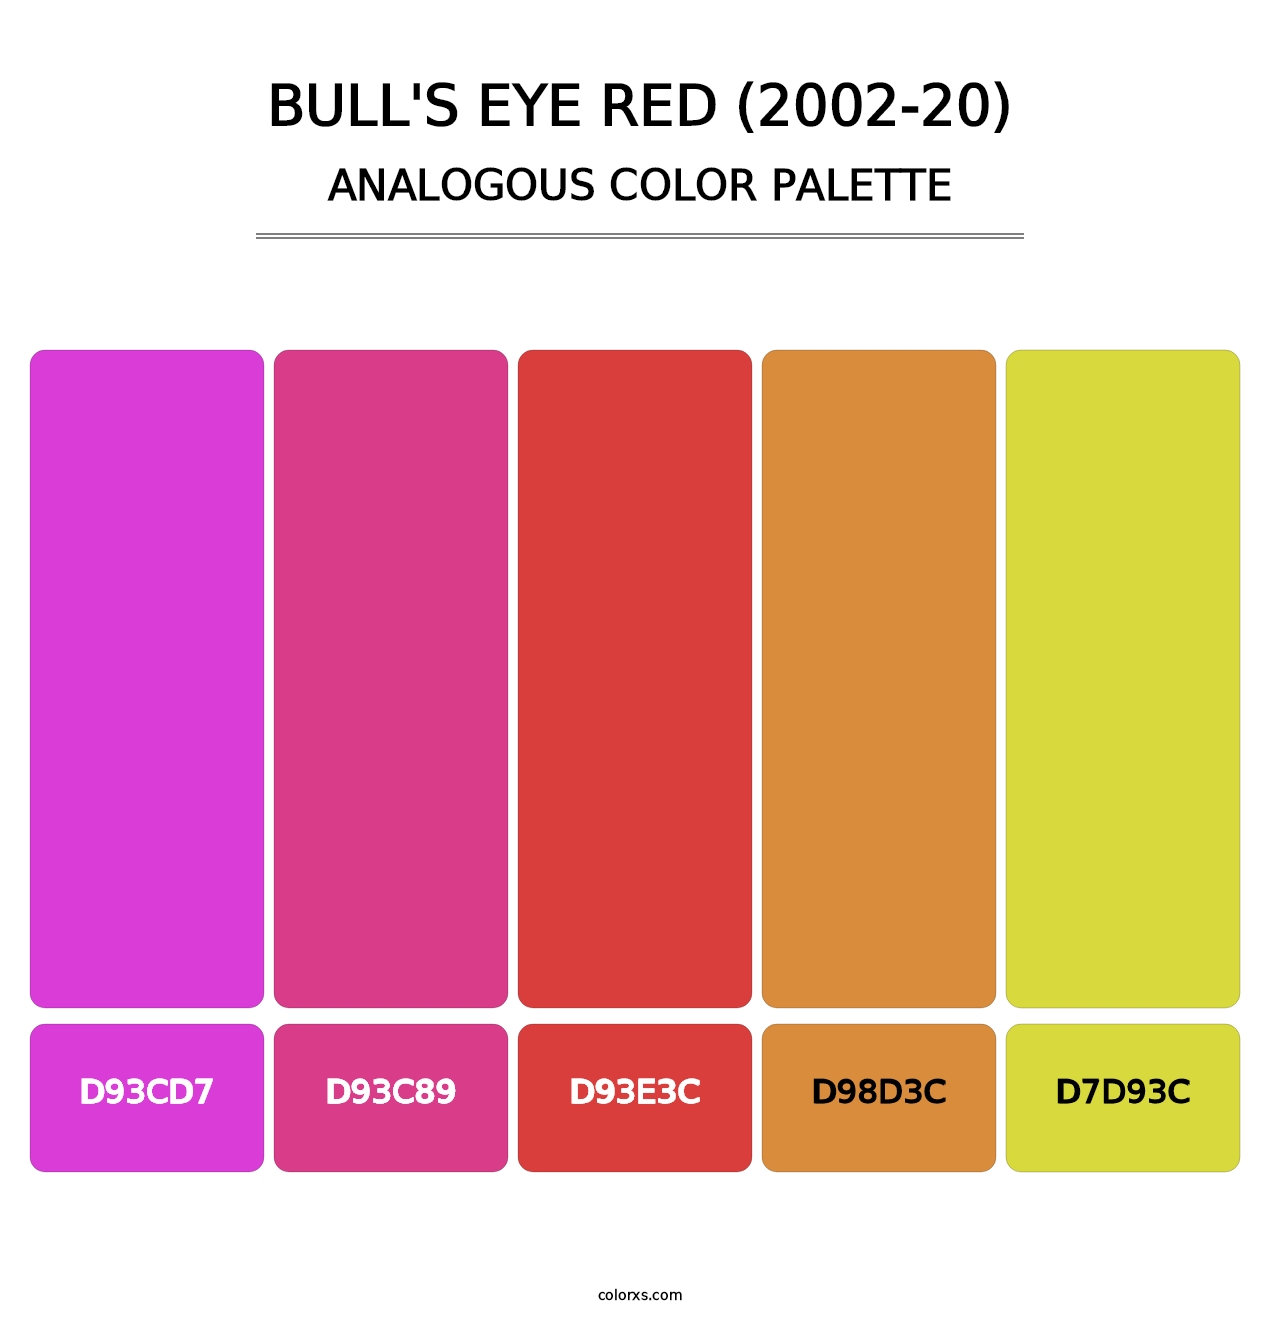 Bull's Eye Red (2002-20) - Analogous Color Palette